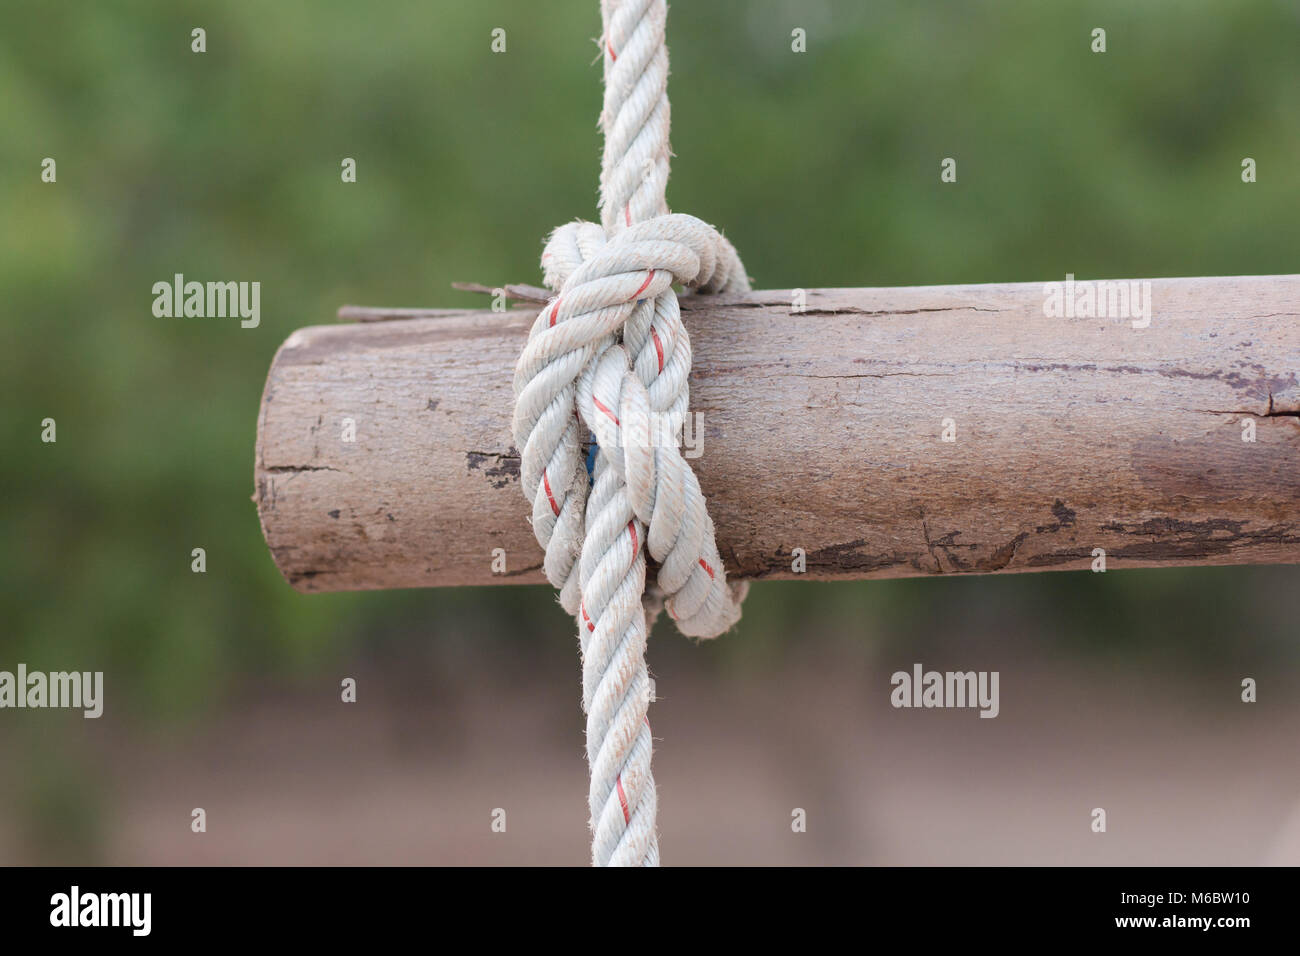 Une corde est attachée à un nœud autour d'un poteau de clôture